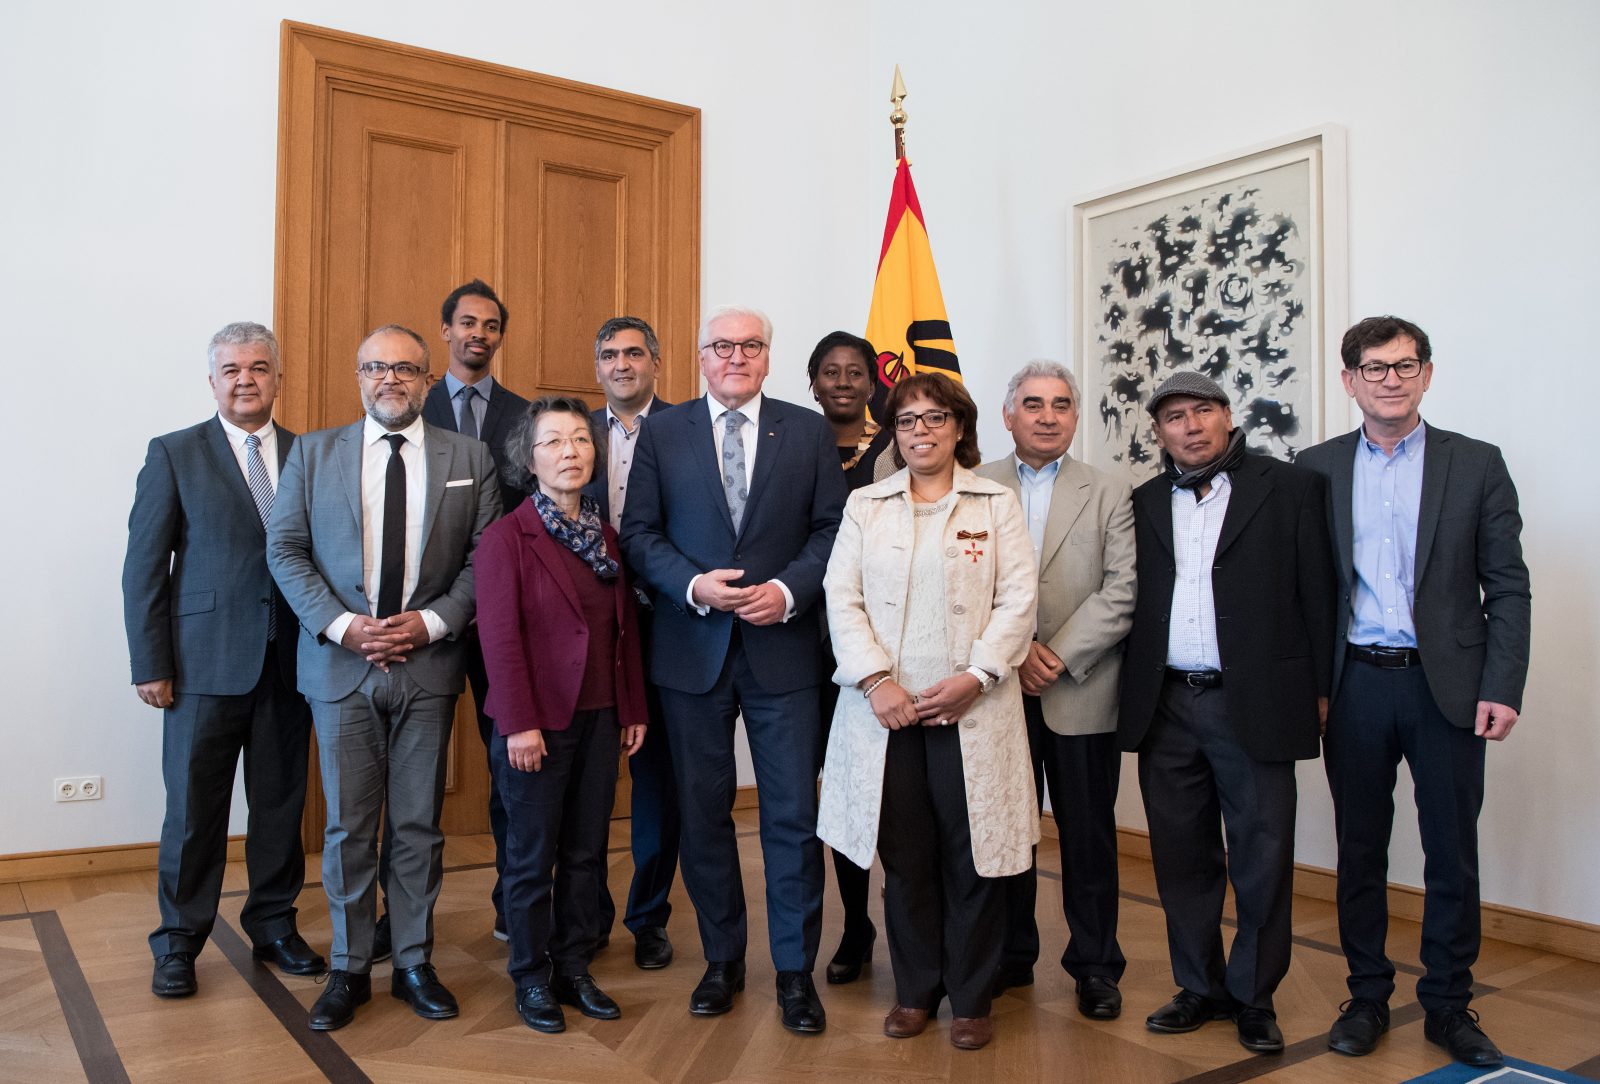 Bundespräsident Steinmeier trifft Migrantenorganisationen